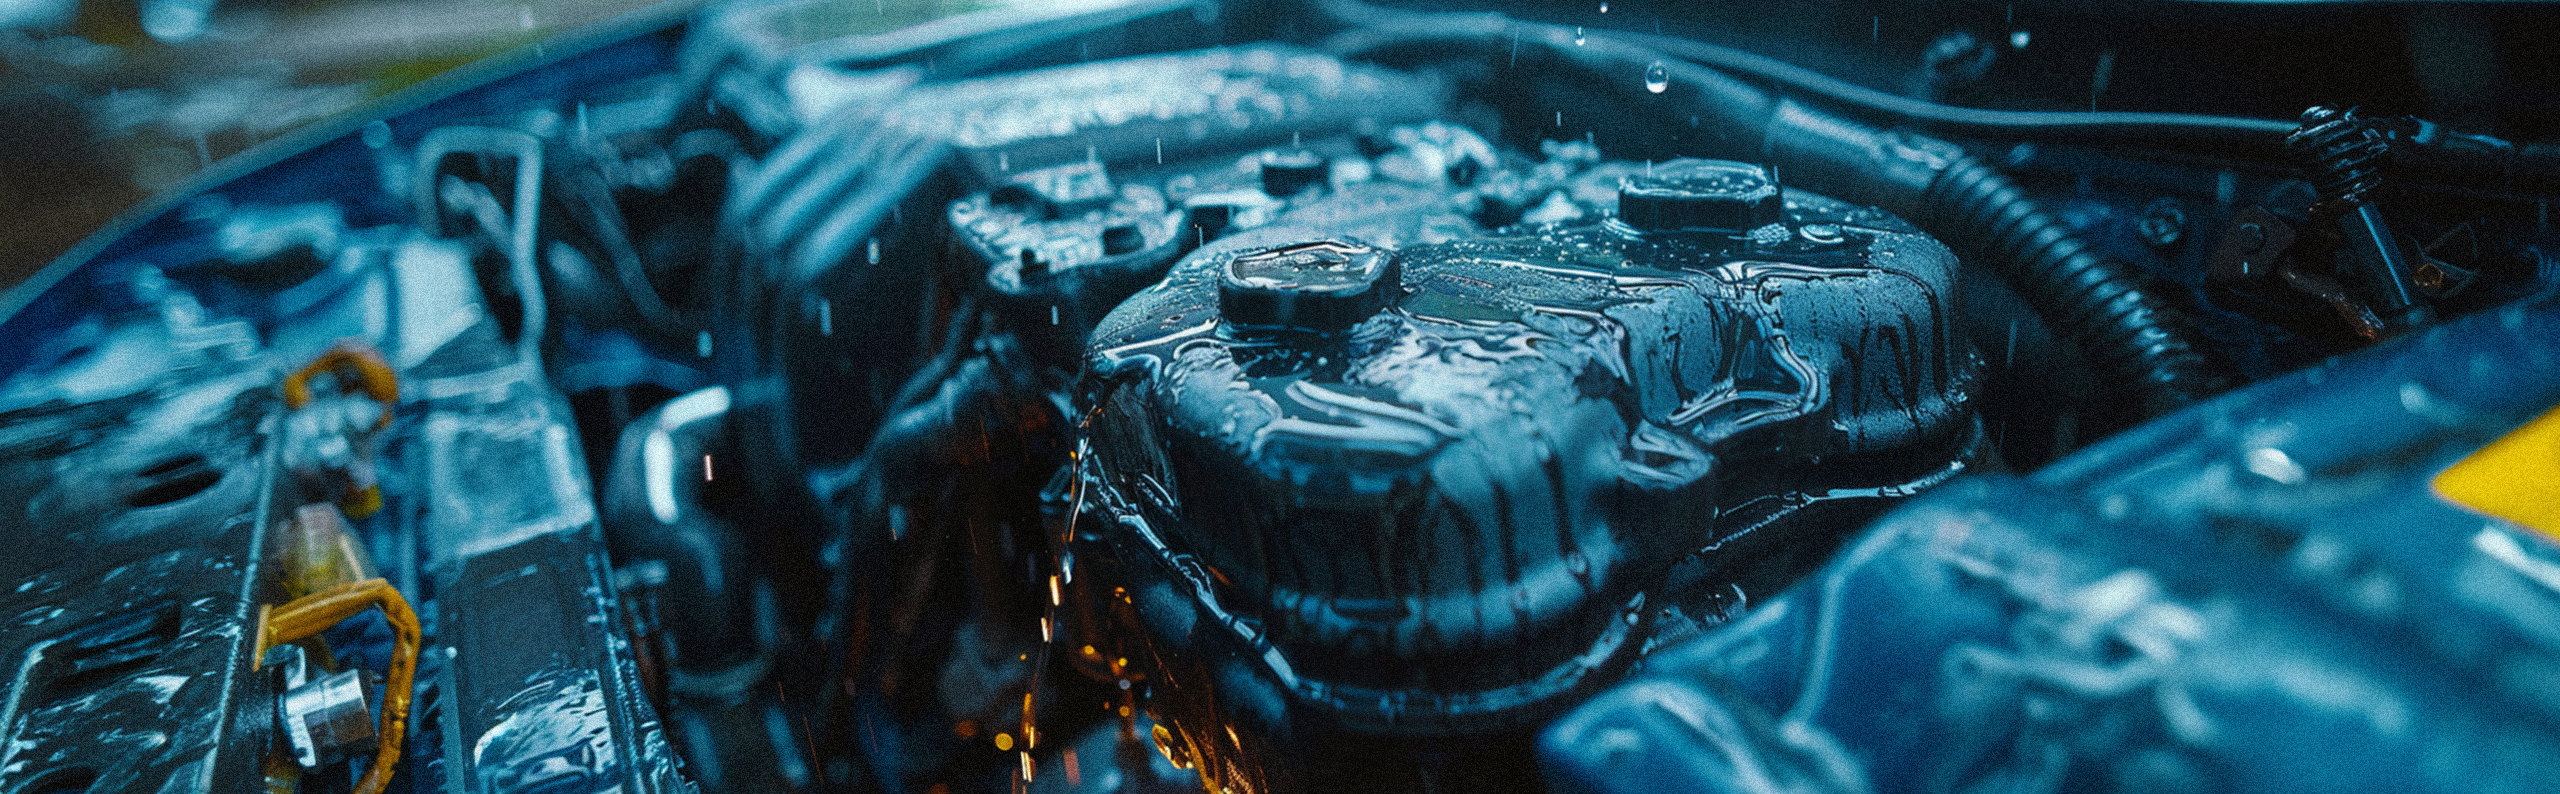 Oljig Bilmotor i regnet, som ska illustrera ett möjligt oljeläckage i motorn.